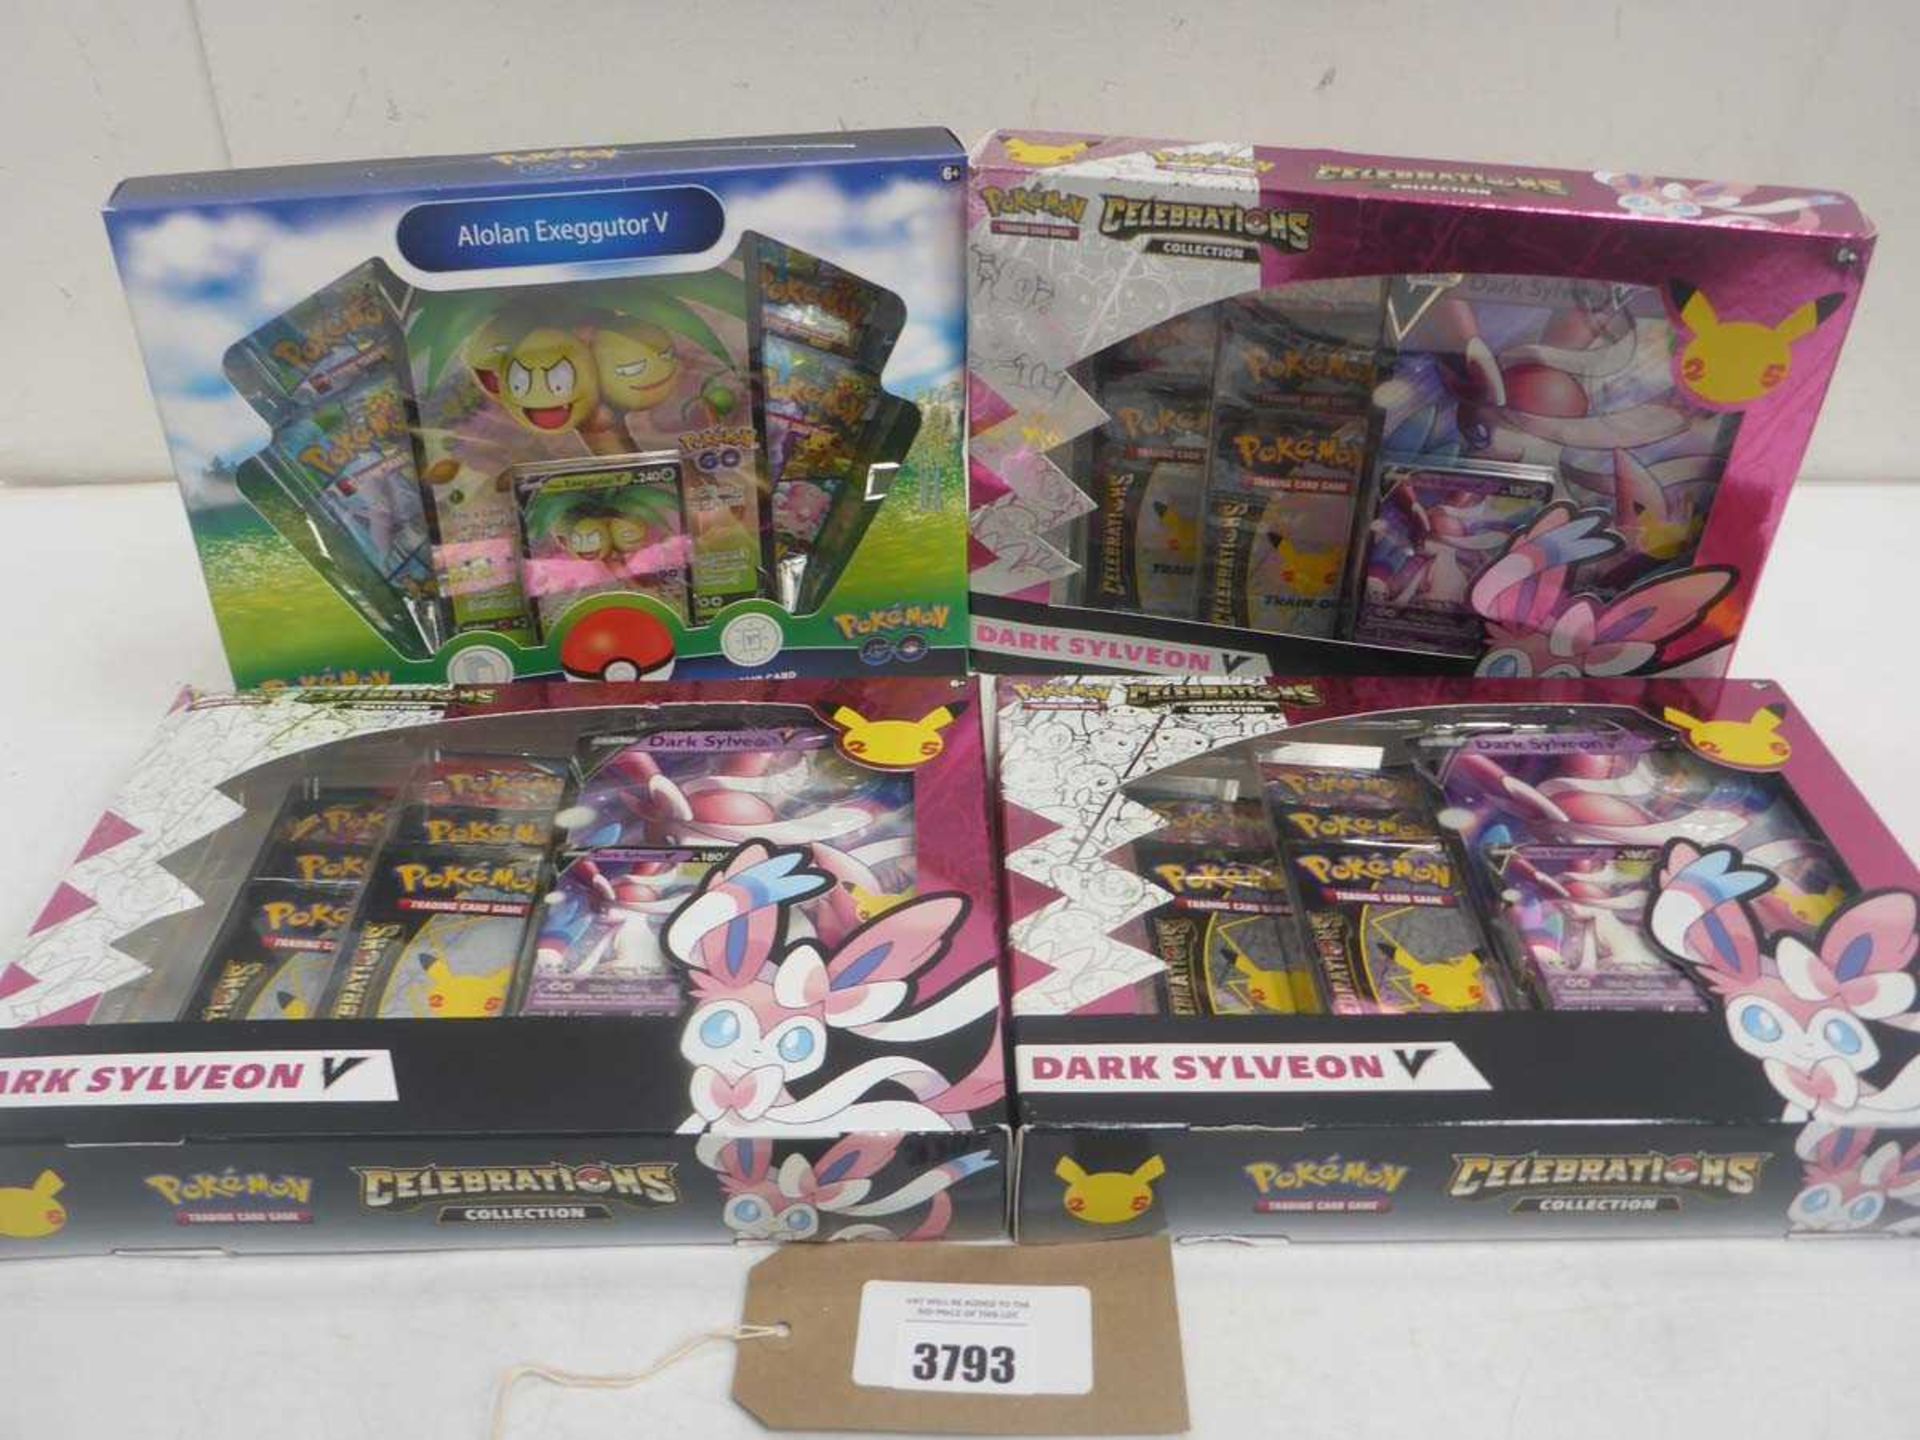 +VAT 3 x Pokémon Celebrations Collections 'Dark Sylveon V packs and Pokémon Trading Card Alolan